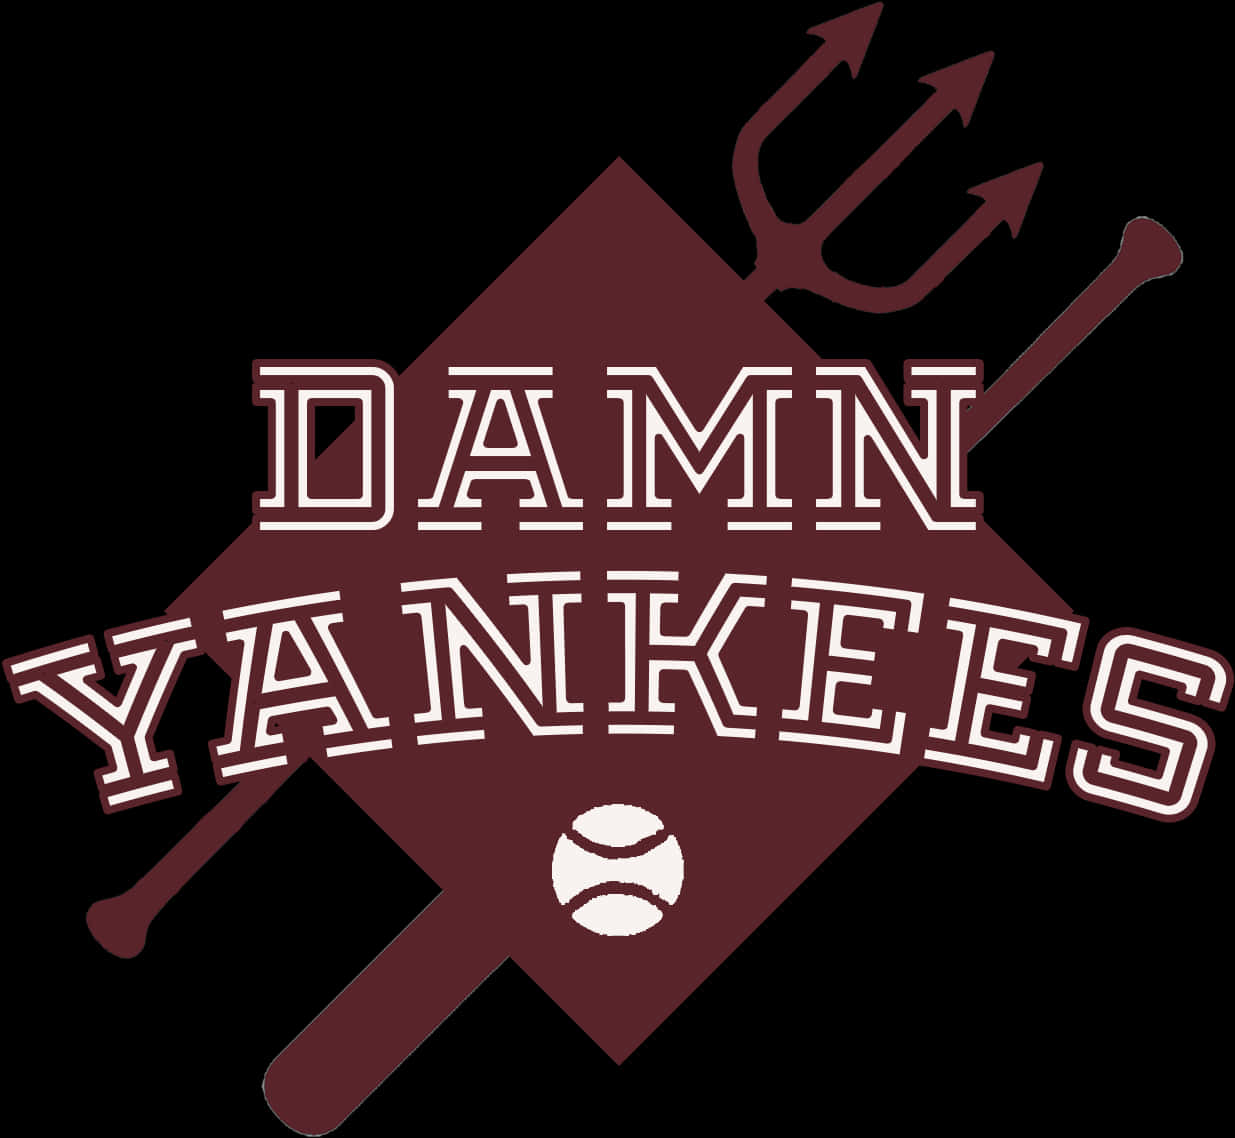 Damn Yankees Logo Design PNG image